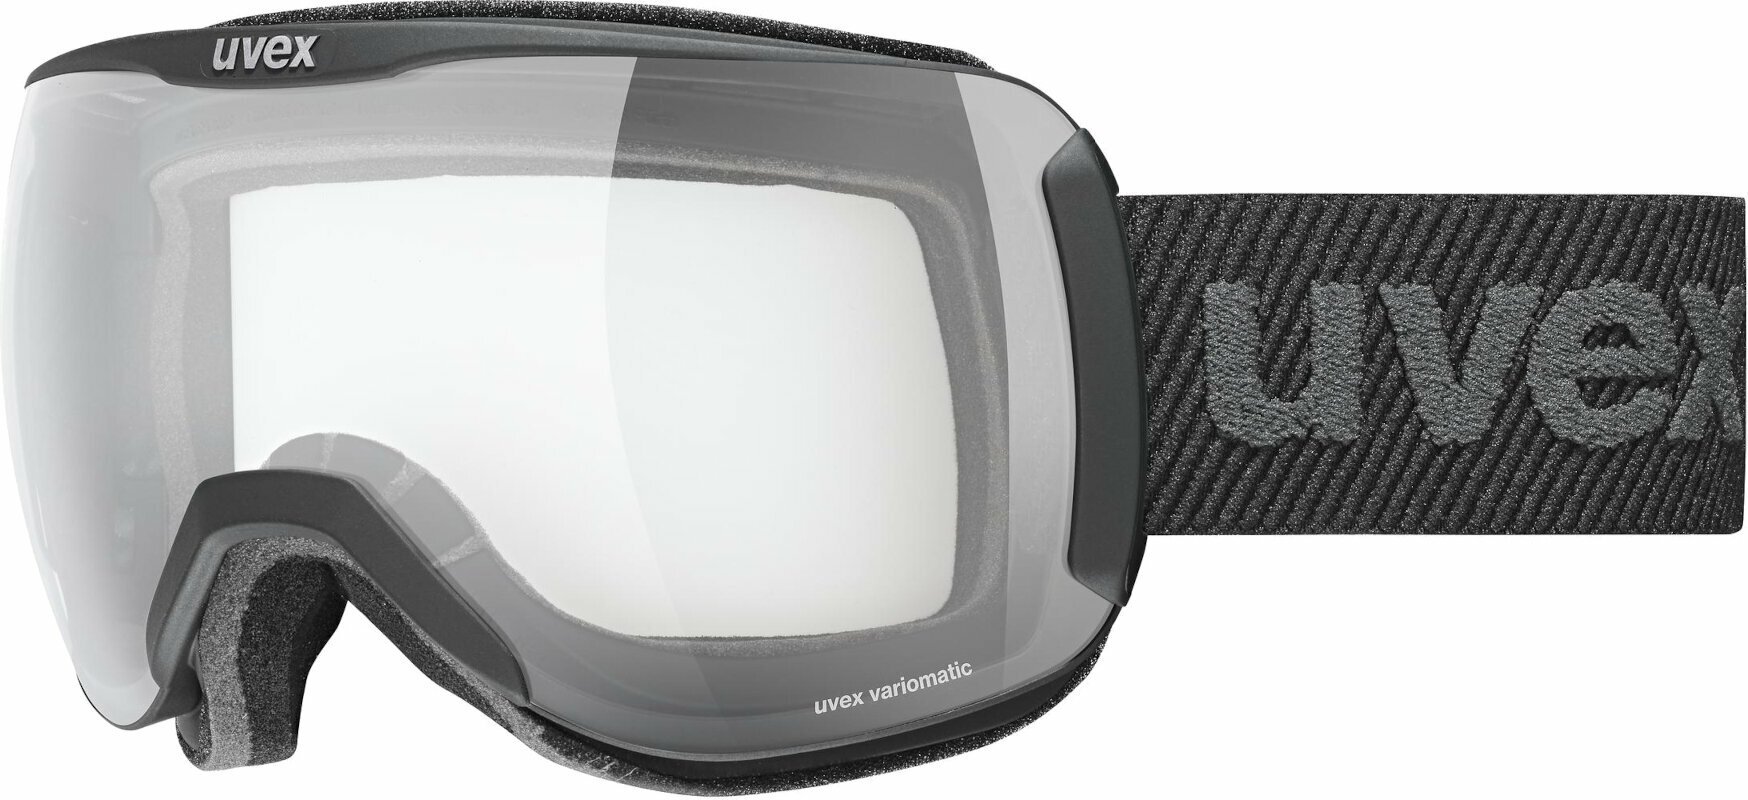 Ski Goggles UVEX Downhill 2100 VPX Black Mat/Variomatic Polavision Ski Goggles